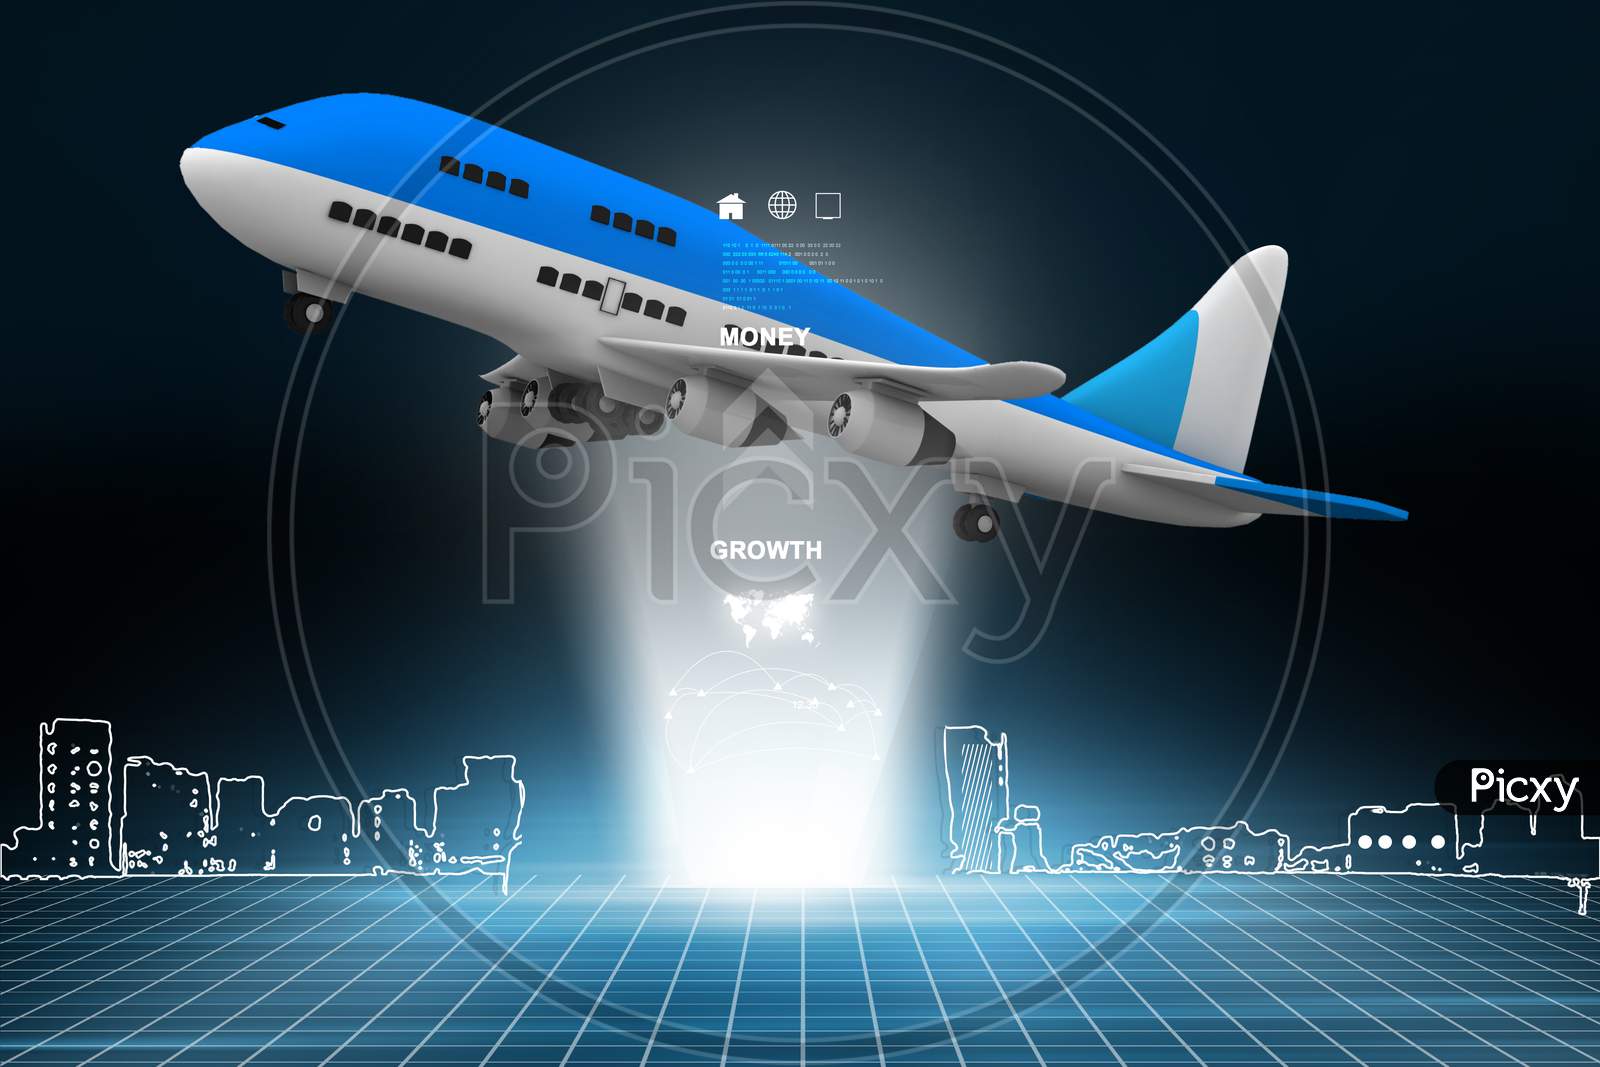 3D Multi Use Air Plane